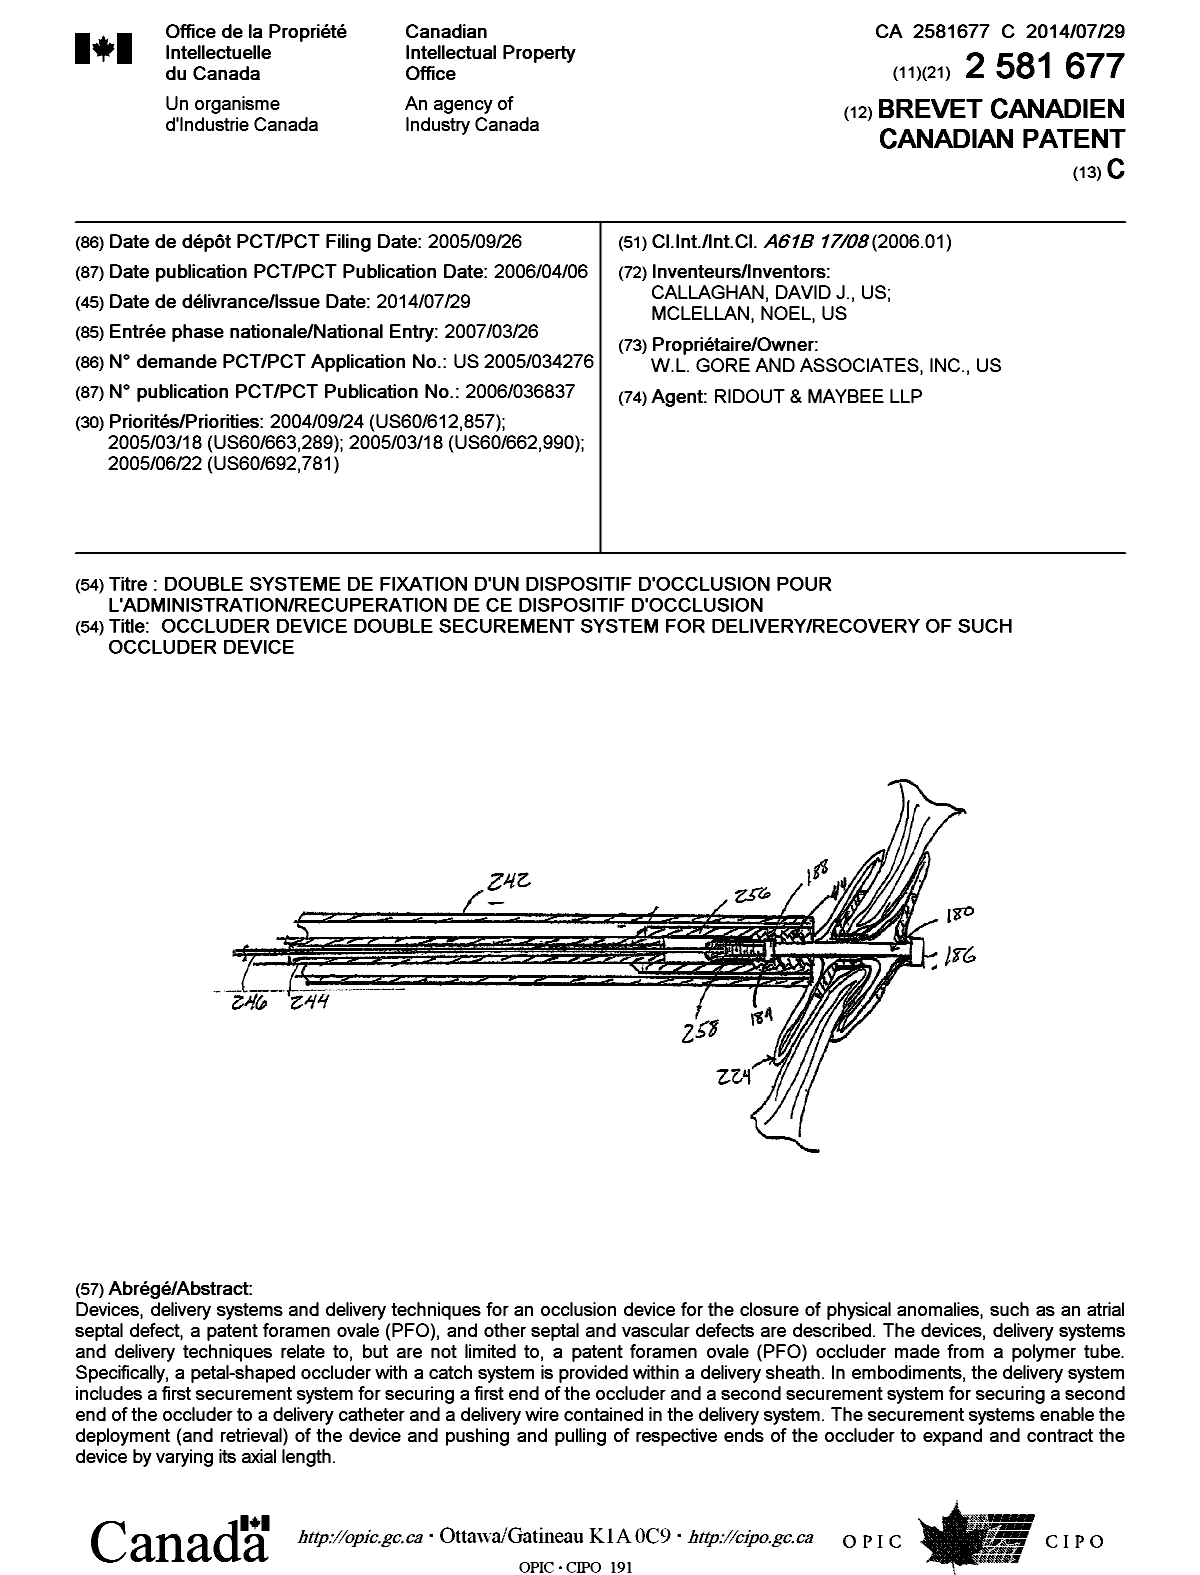 Document de brevet canadien 2581677. Page couverture 20140704. Image 1 de 1